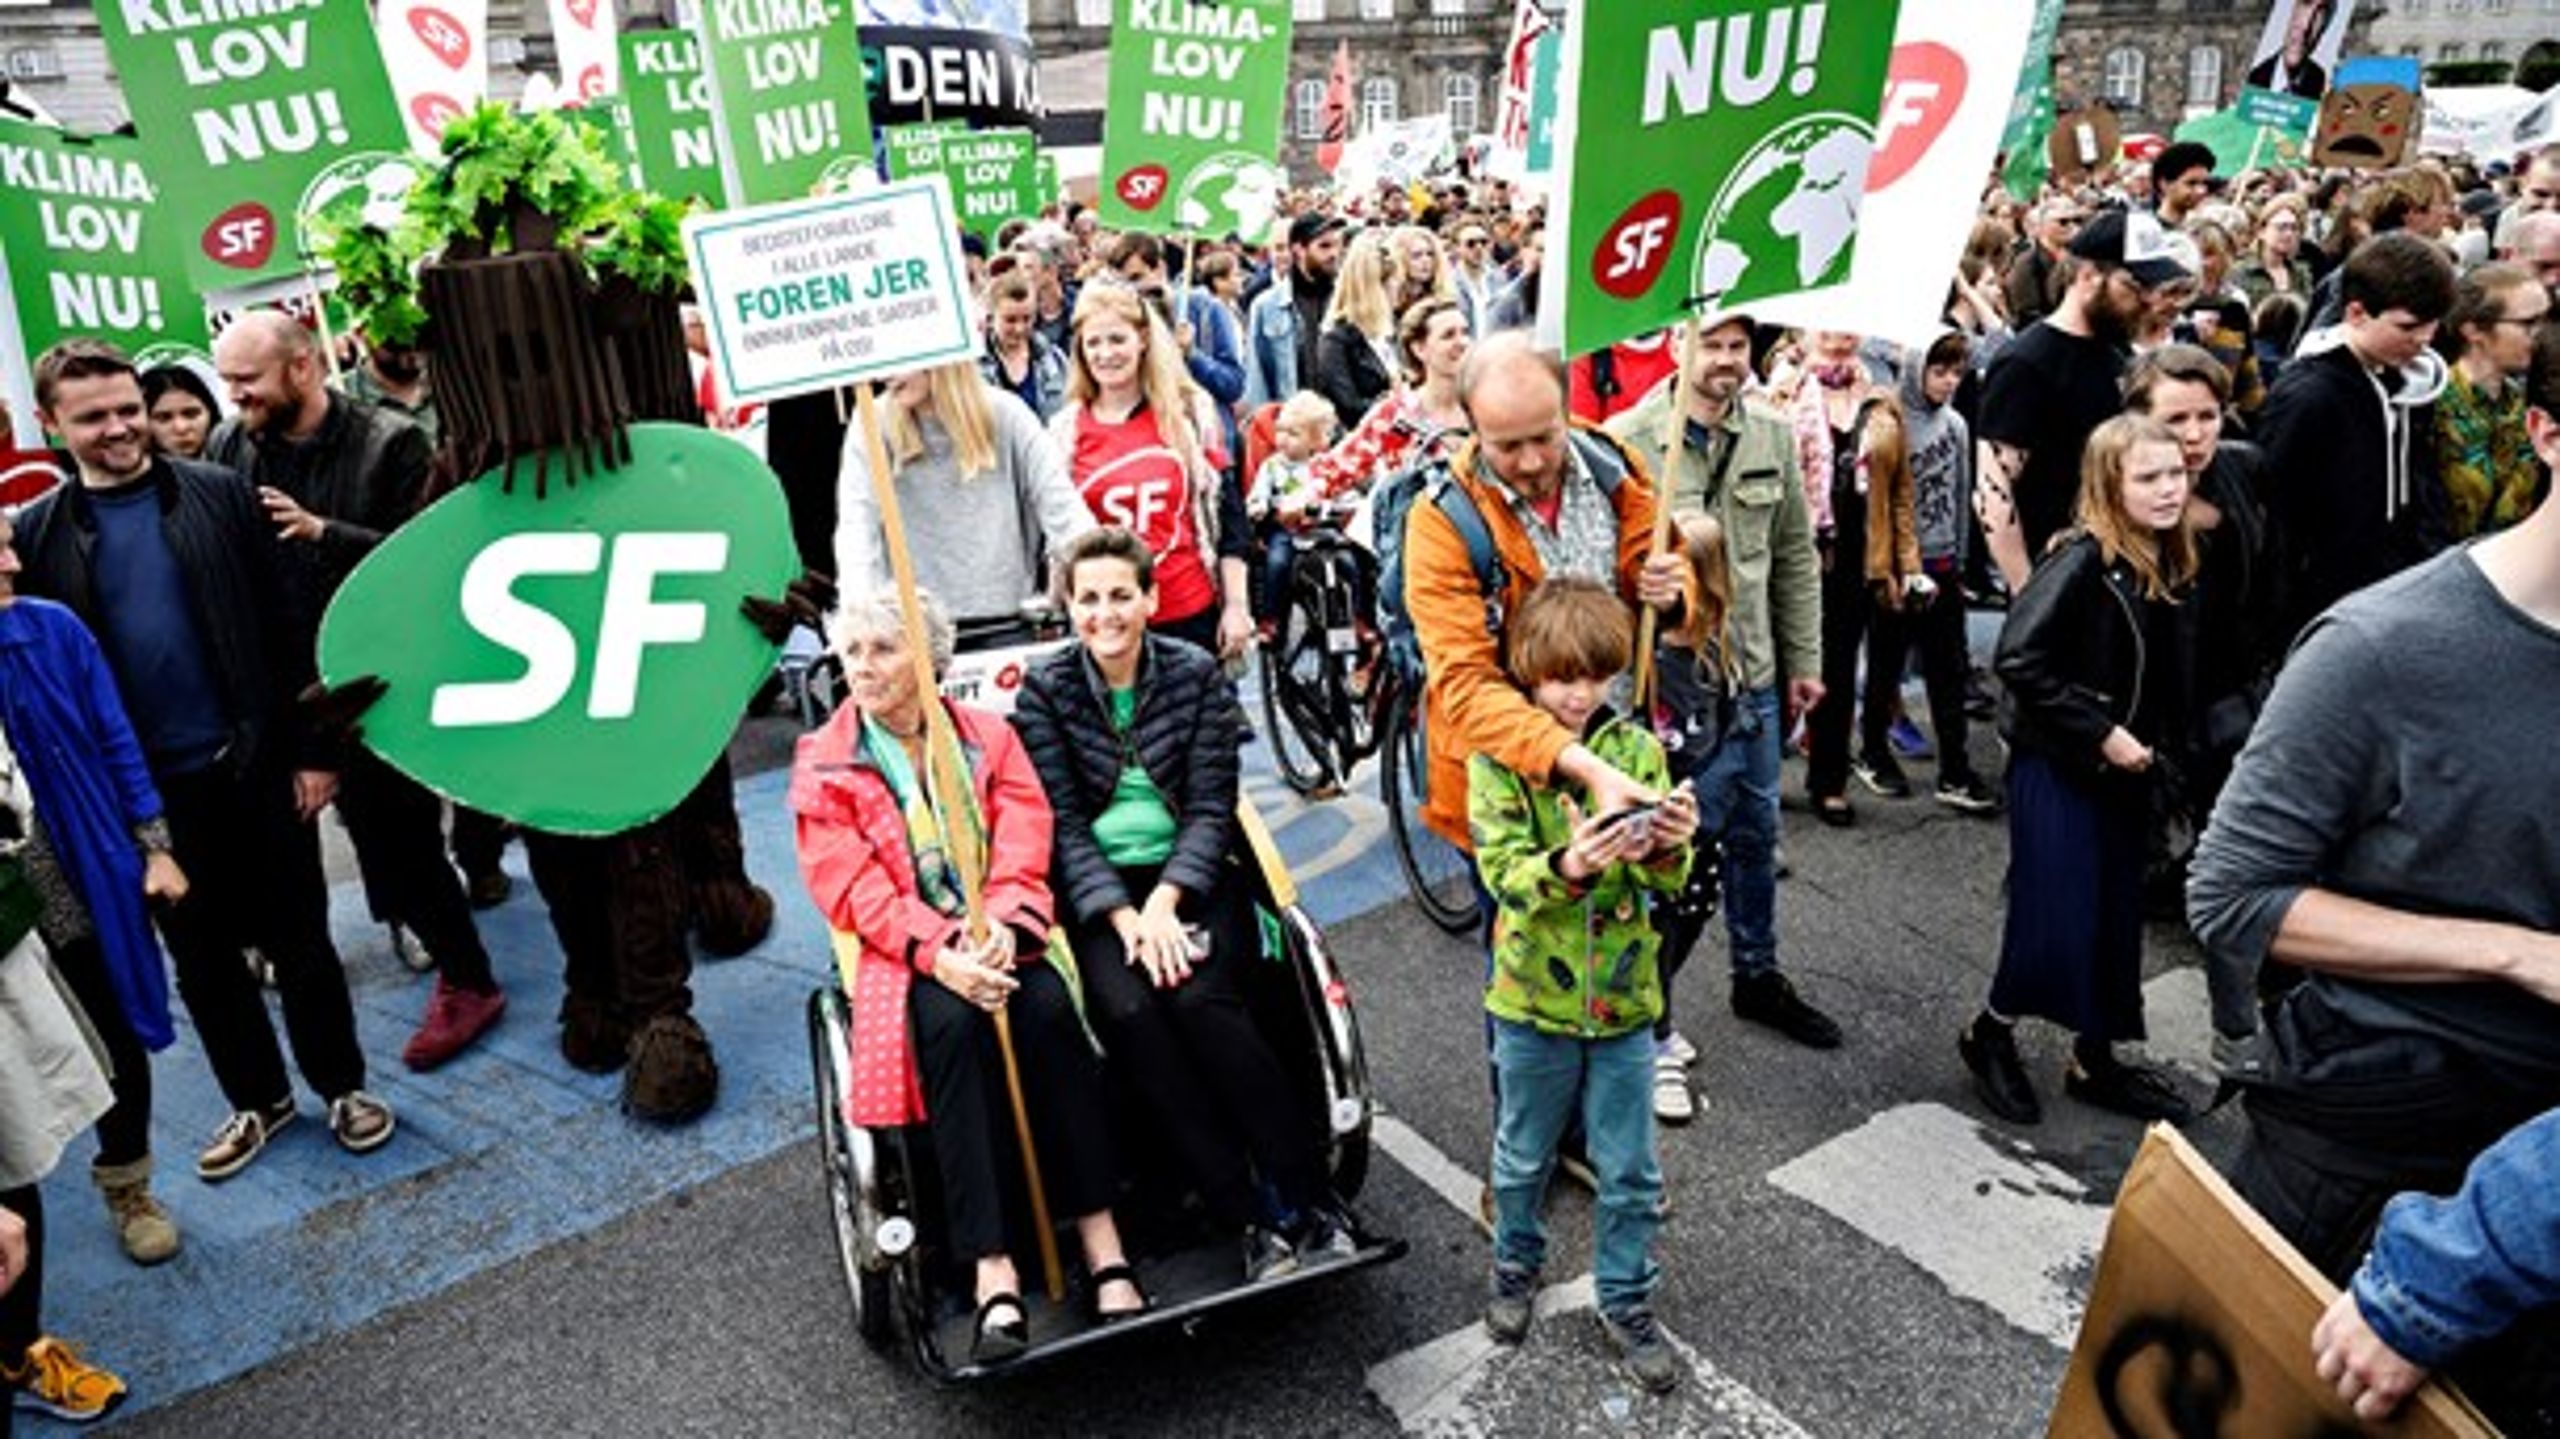 Langt hovedparten af alle de 14 danske europaparlamentskandidater, der blev valgt, havde den grønne omstilling som et af deres tre hovedtemaer, skriver Lars Midtiby.